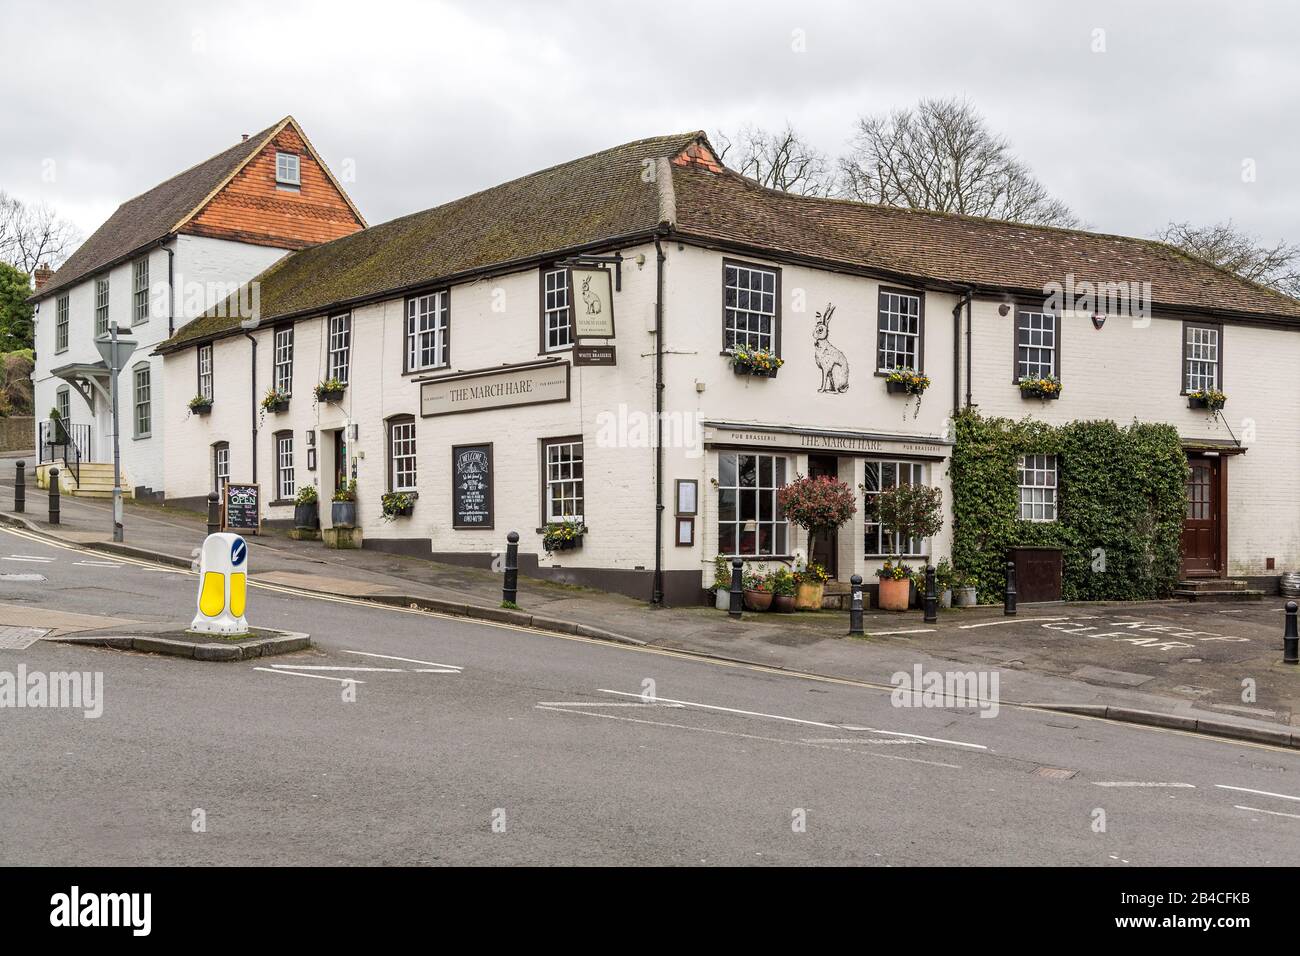 Ein malerisches, weiß getünchtes englisches Pub und Restaurant namens The March Hare. The Castle Square, Guildford, Surrey, England. Stockfoto